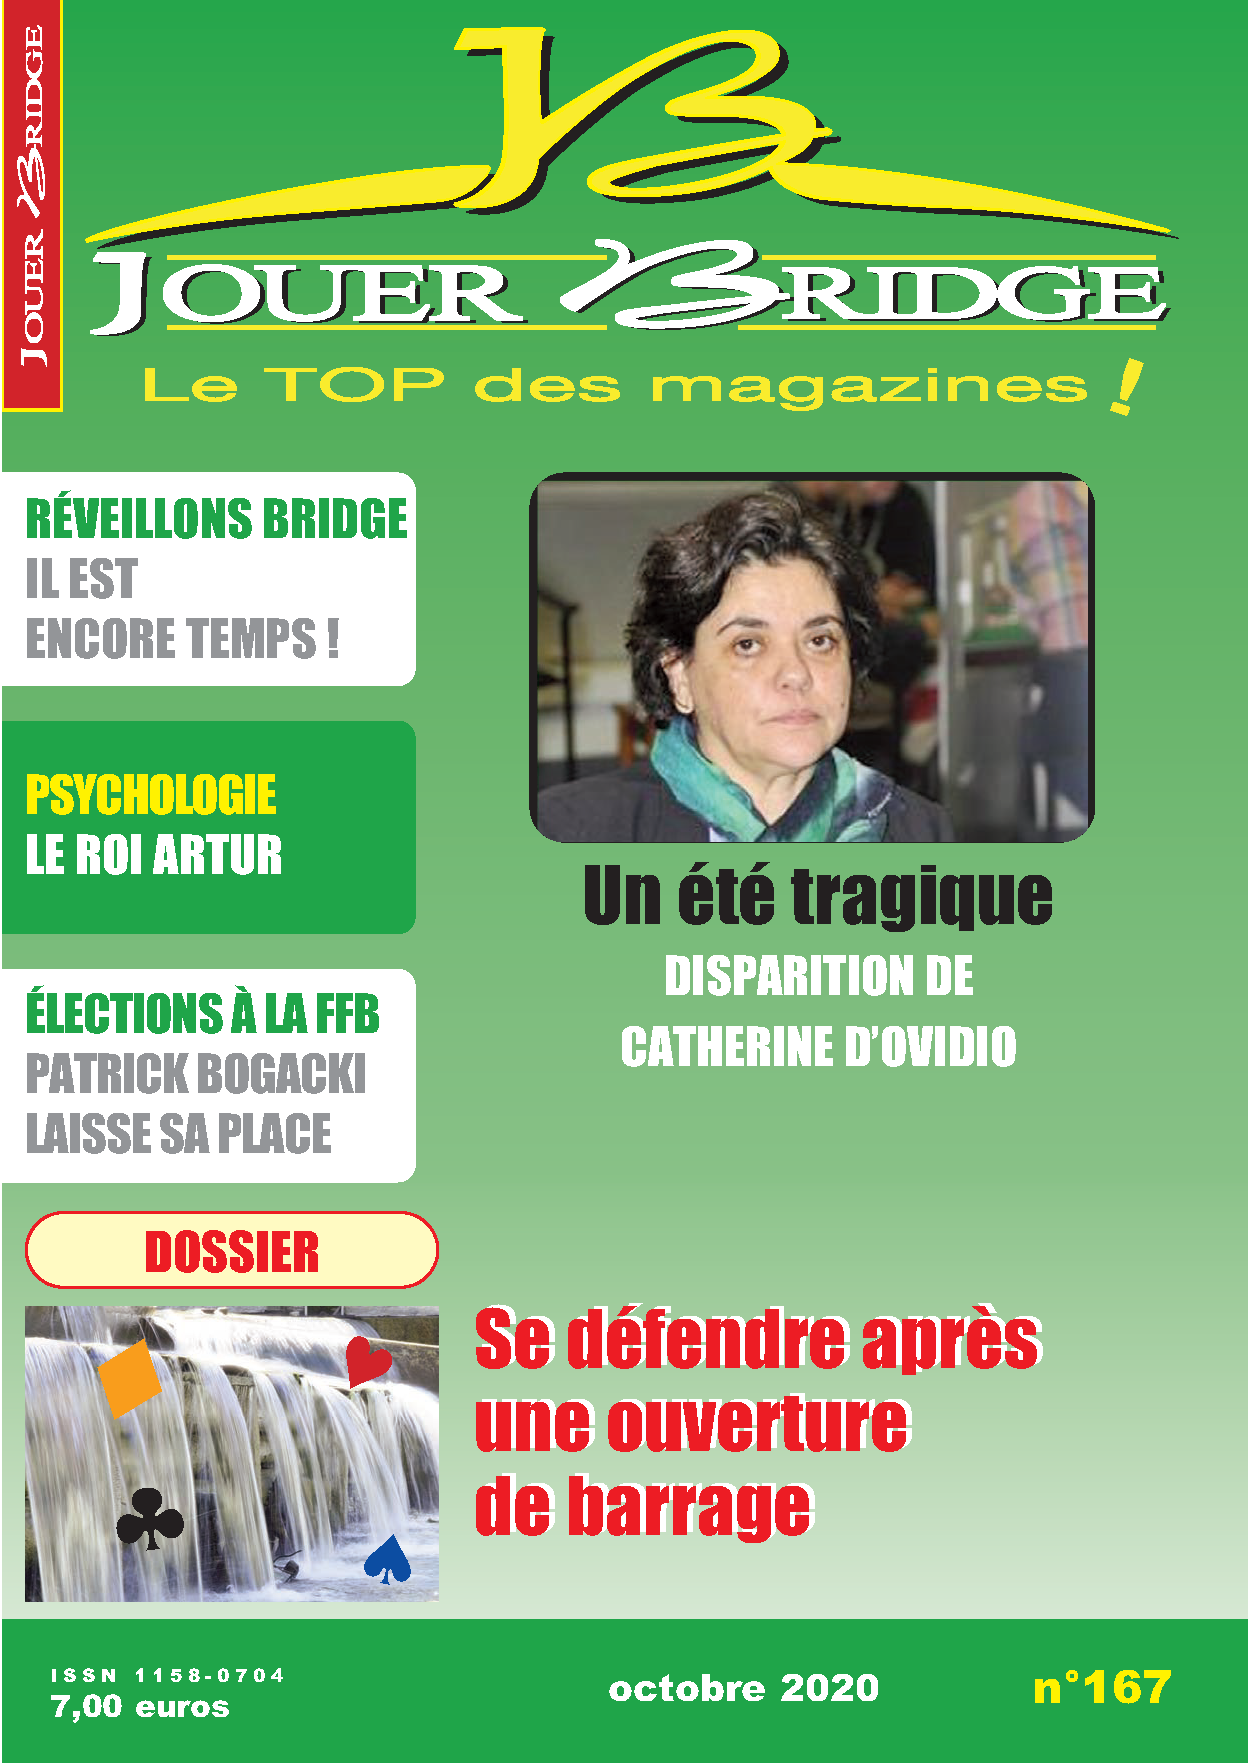 image Jouer Bridge 167 - Défense après barrage